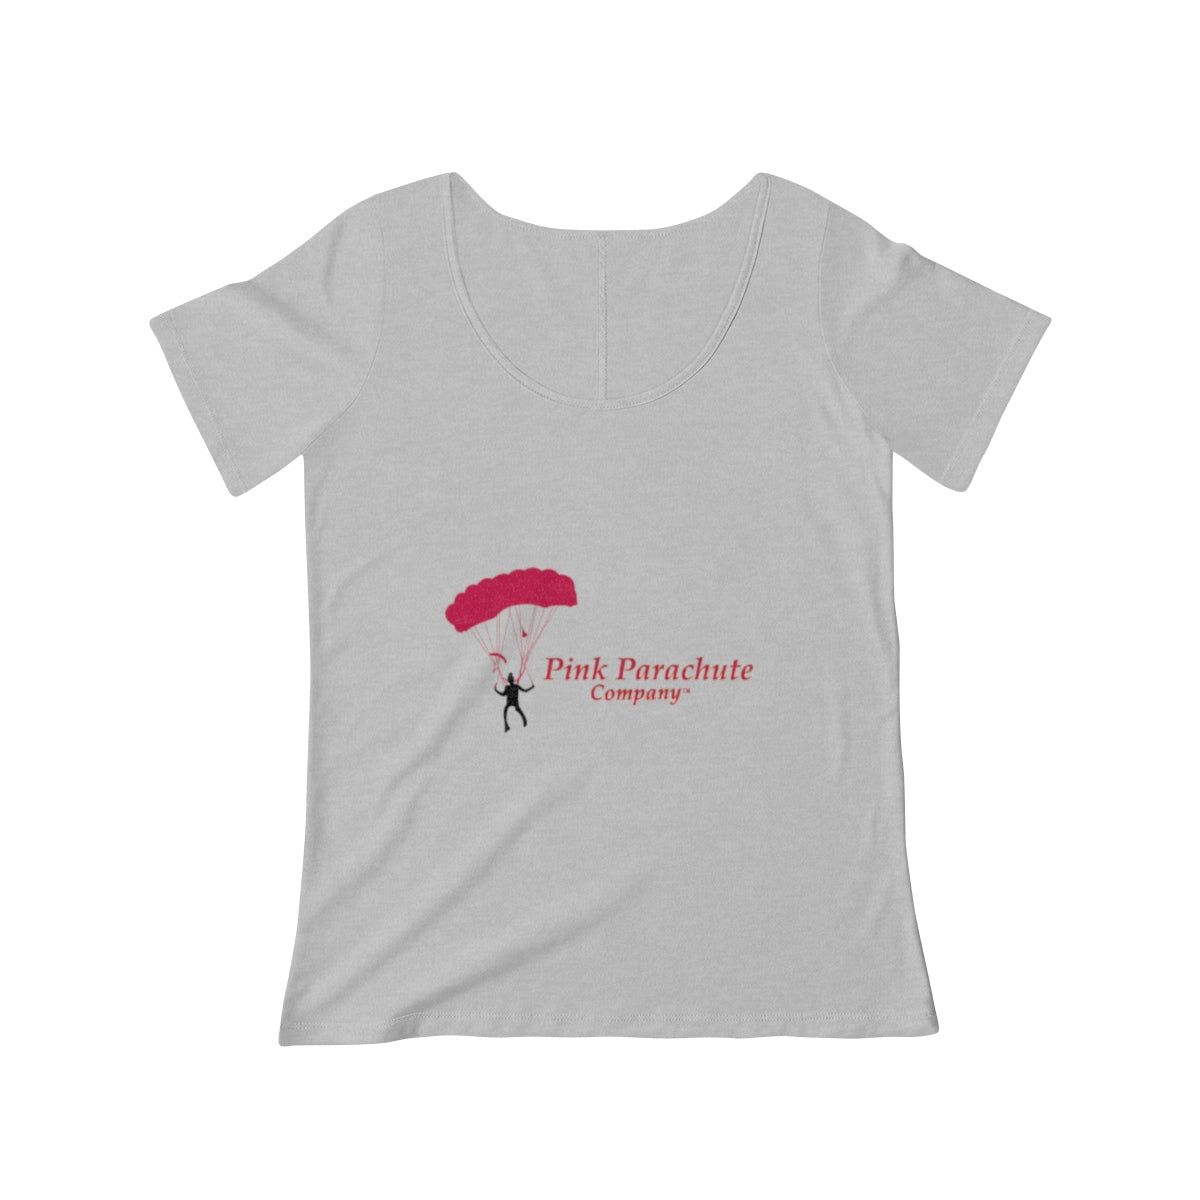 Pink Parachute Company - Women's  Fuschia Scoop Neck T-shirt